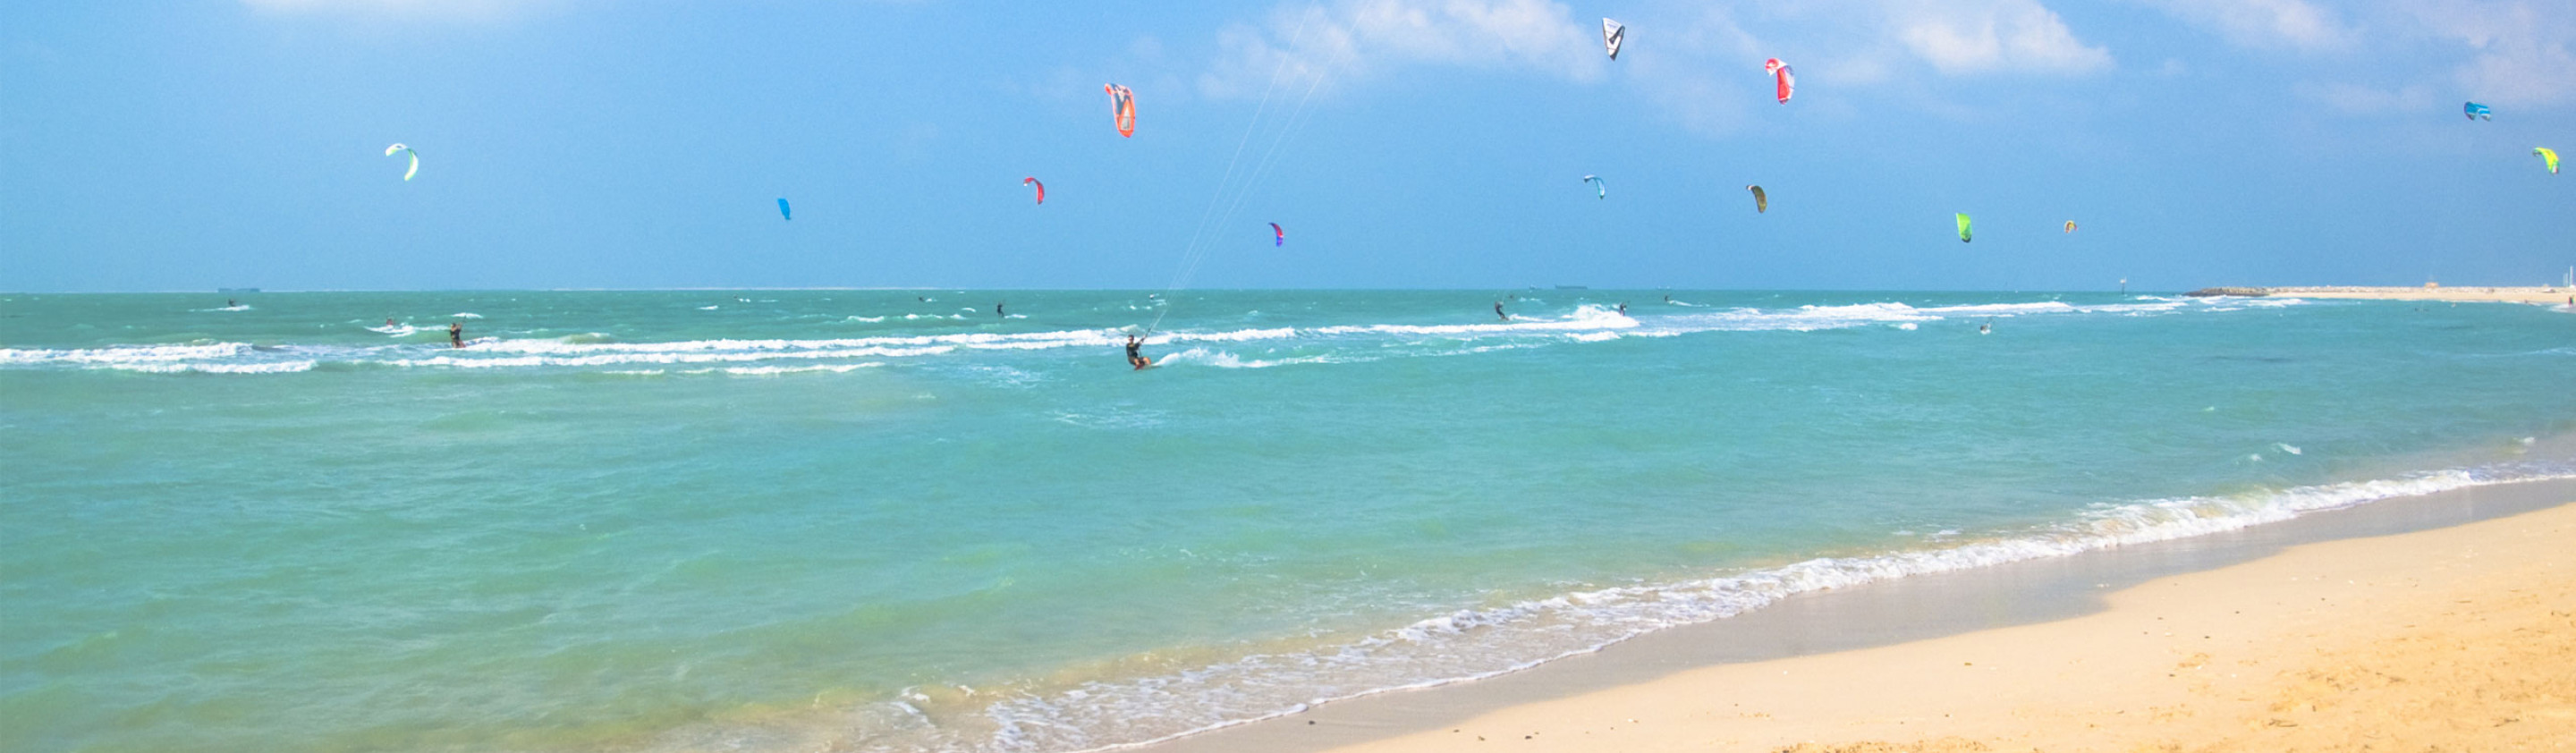 Wild Workout Kite Beach Dubai